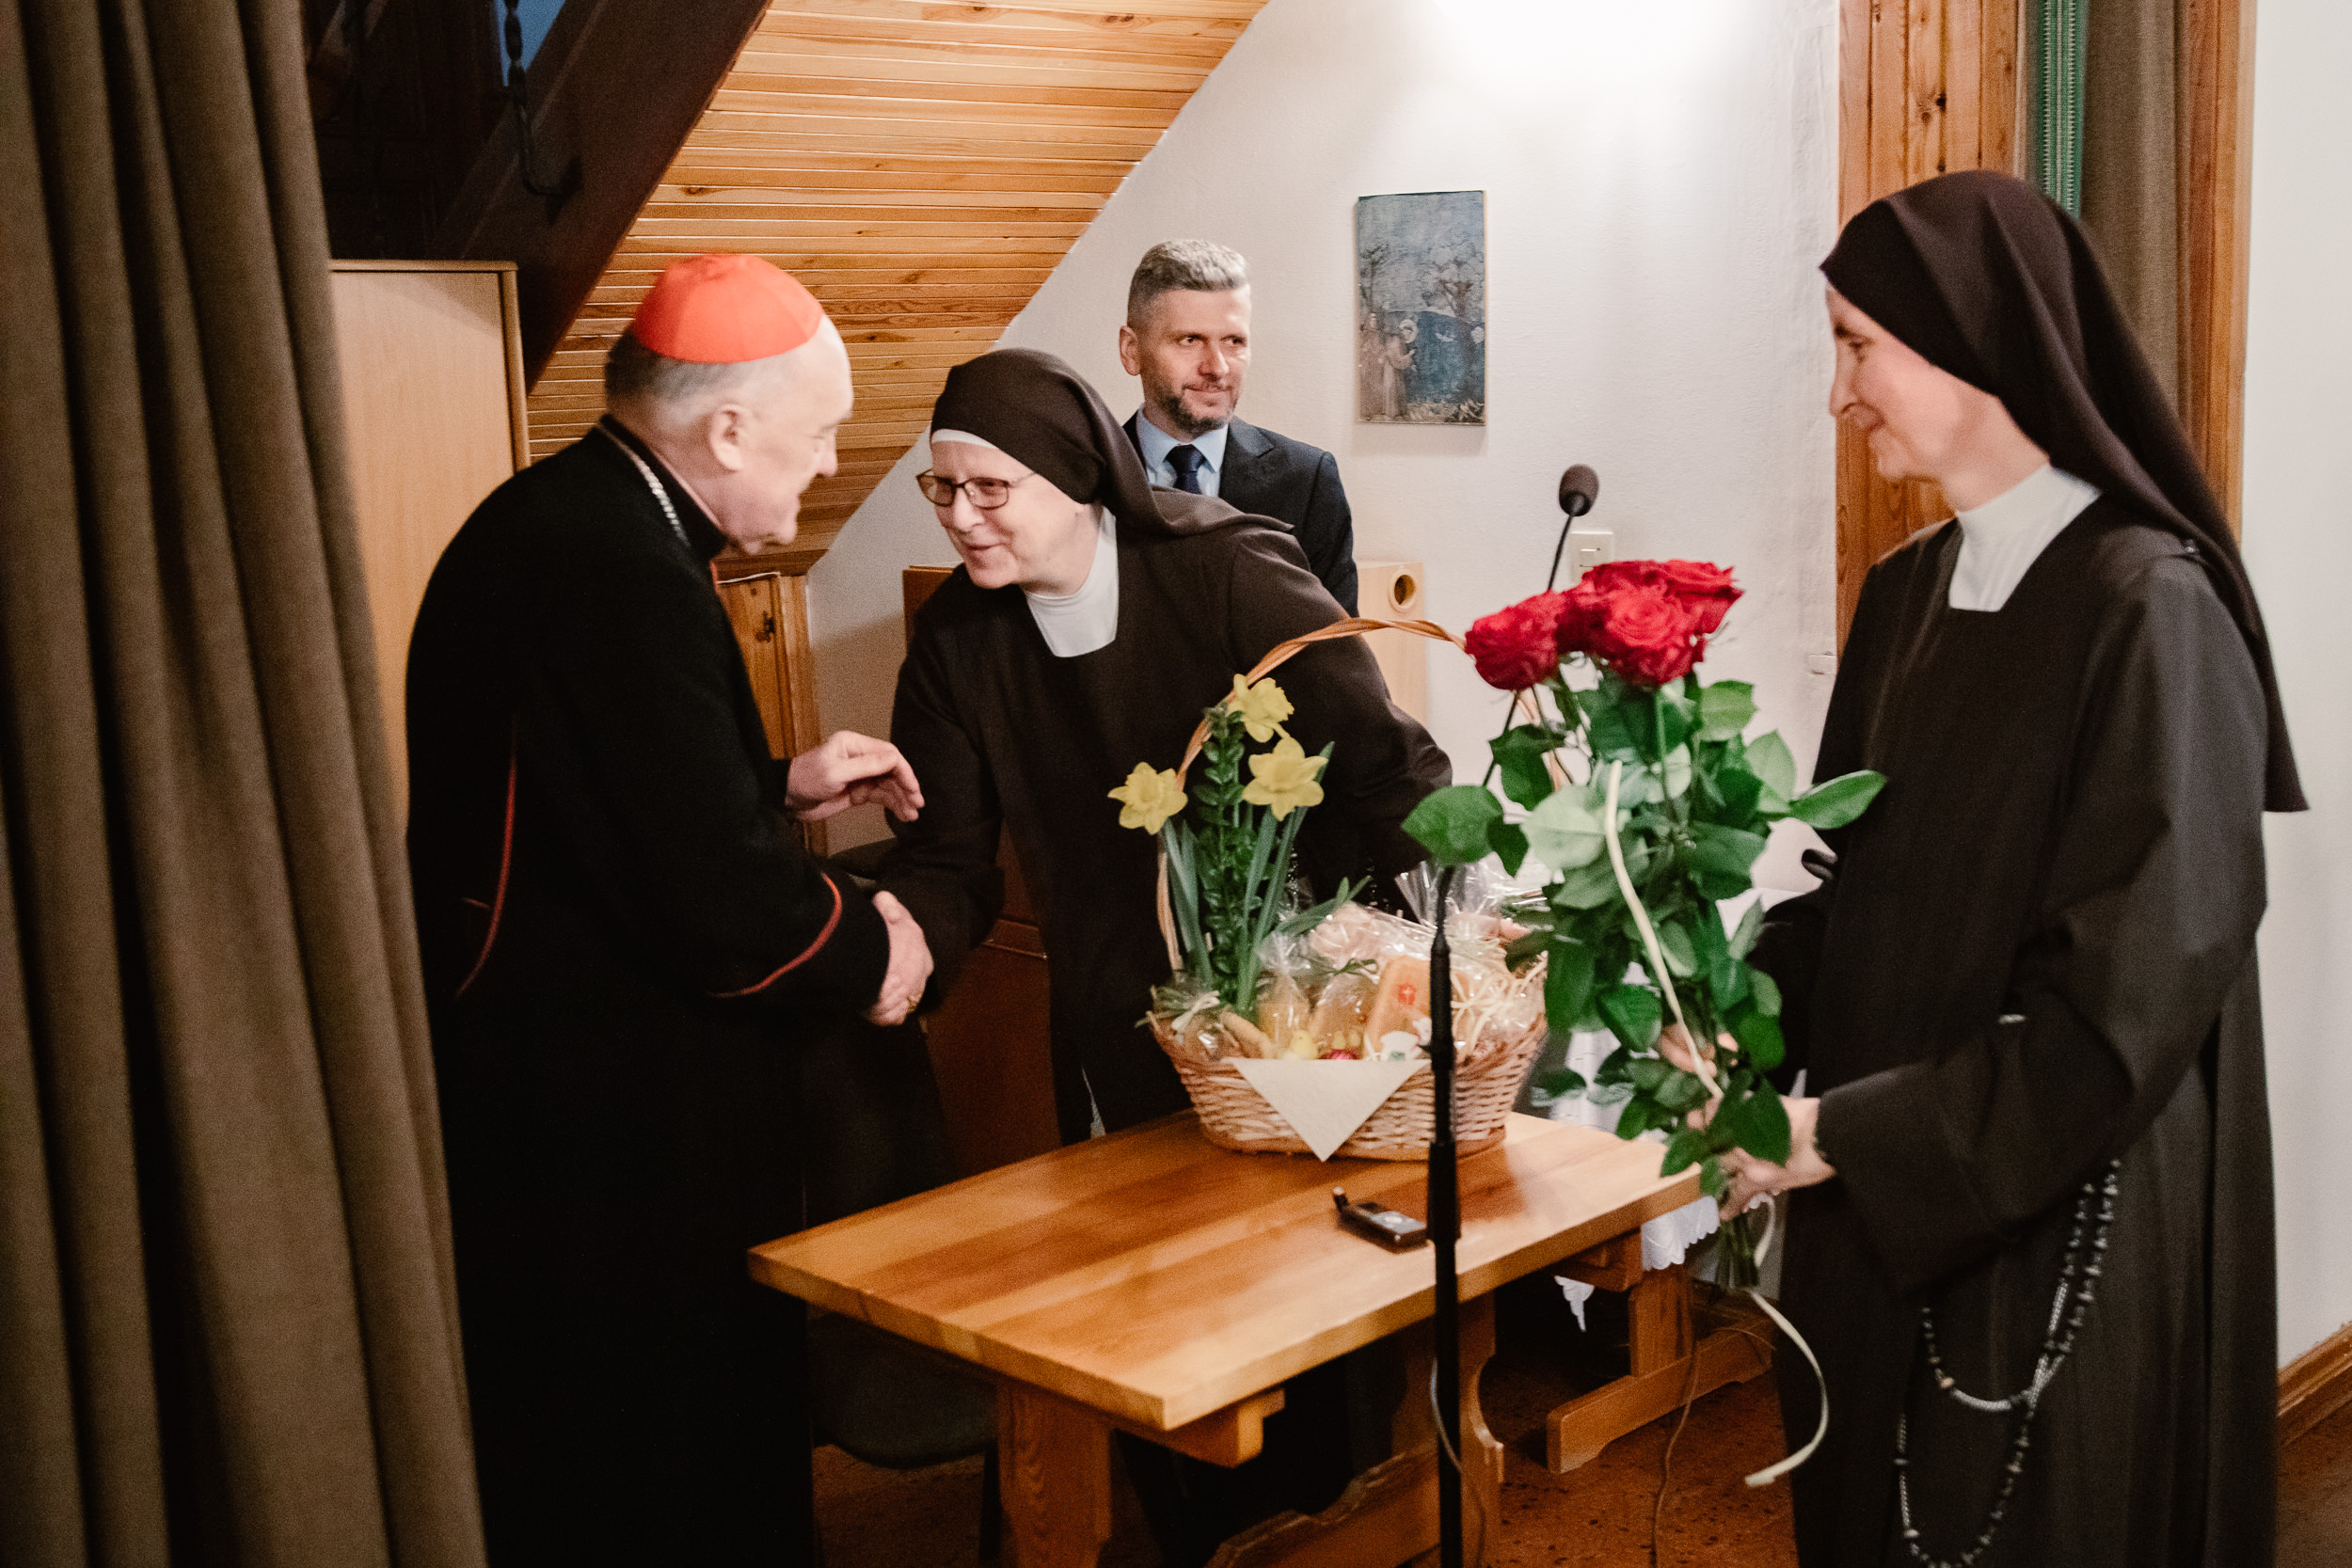 Matka Judyta i s. Anastazja wręczają kosz z wypiekami i kwiaty księdzu kardynałowi Kazimierzowy Nyczowi.